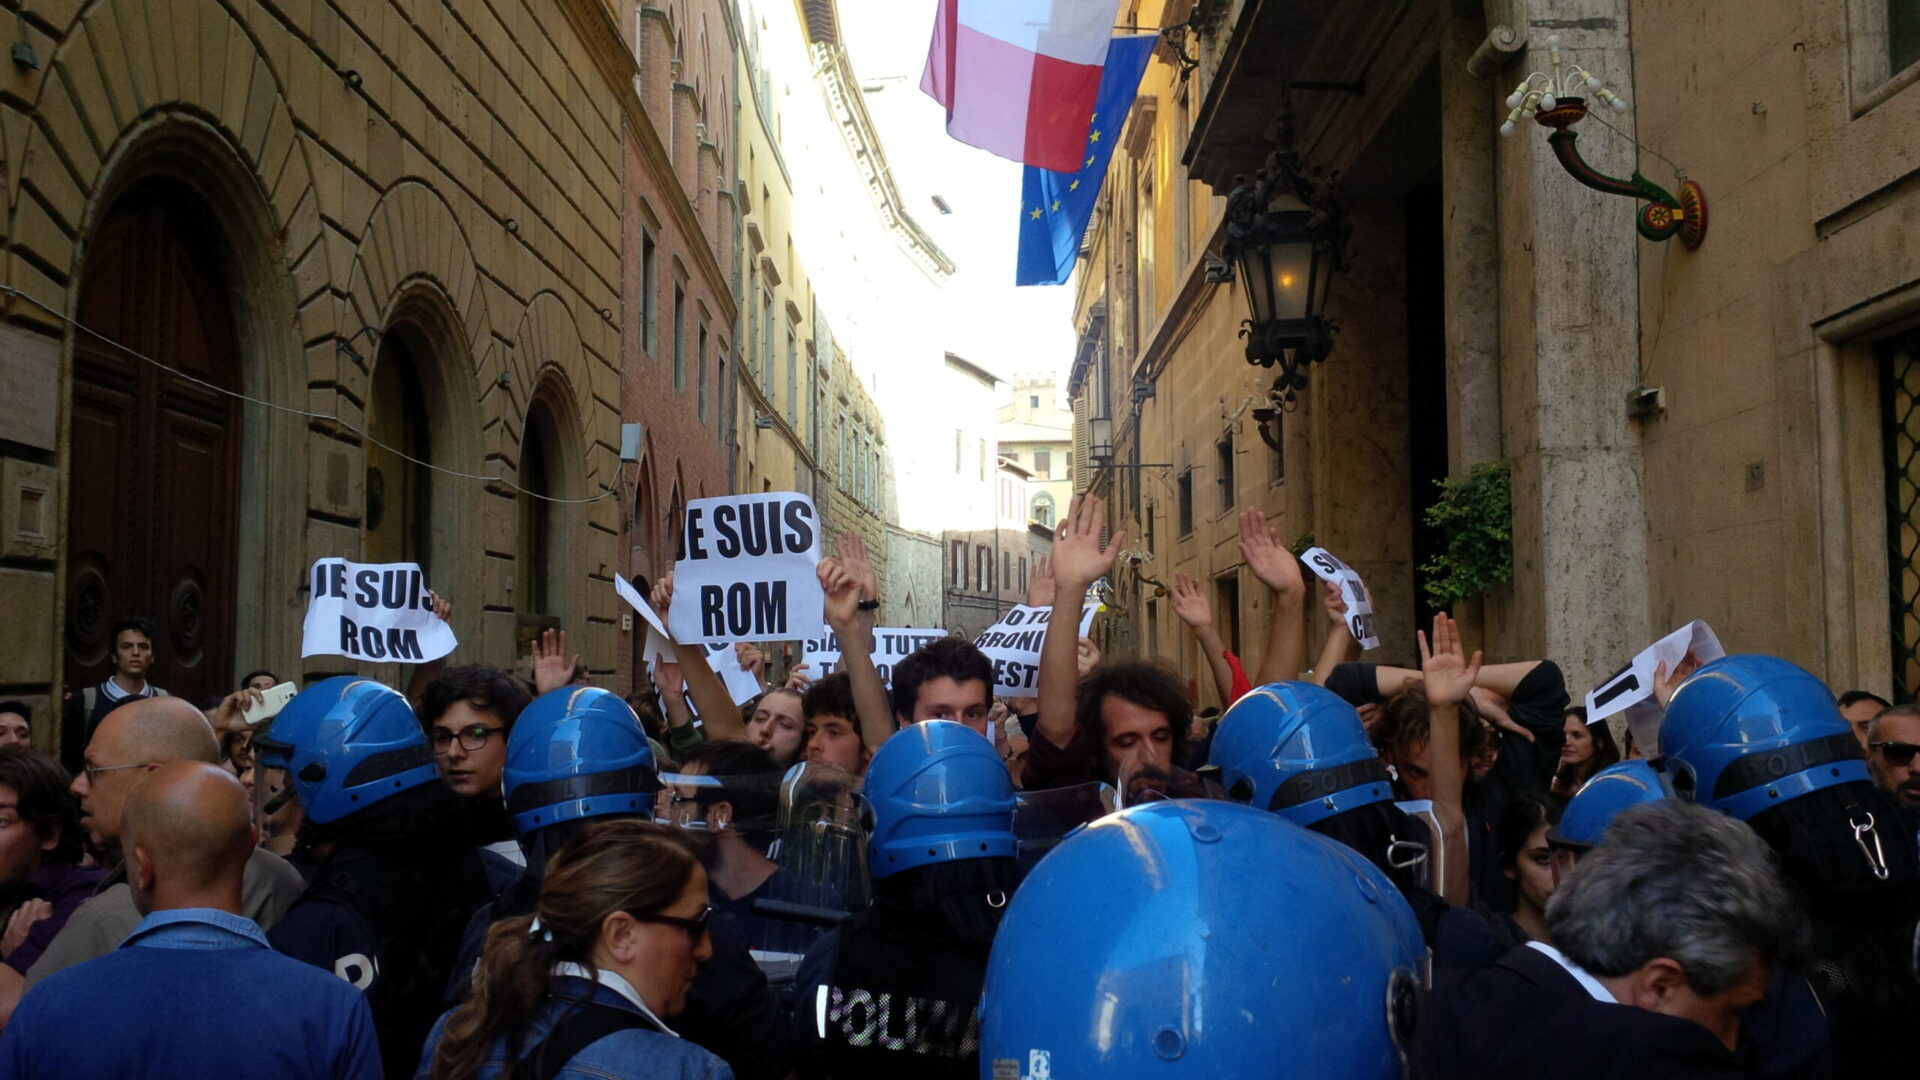 Politica malata. Salvini a Siena, scontri tra forze dell’ordine e manifestanti di sinistra